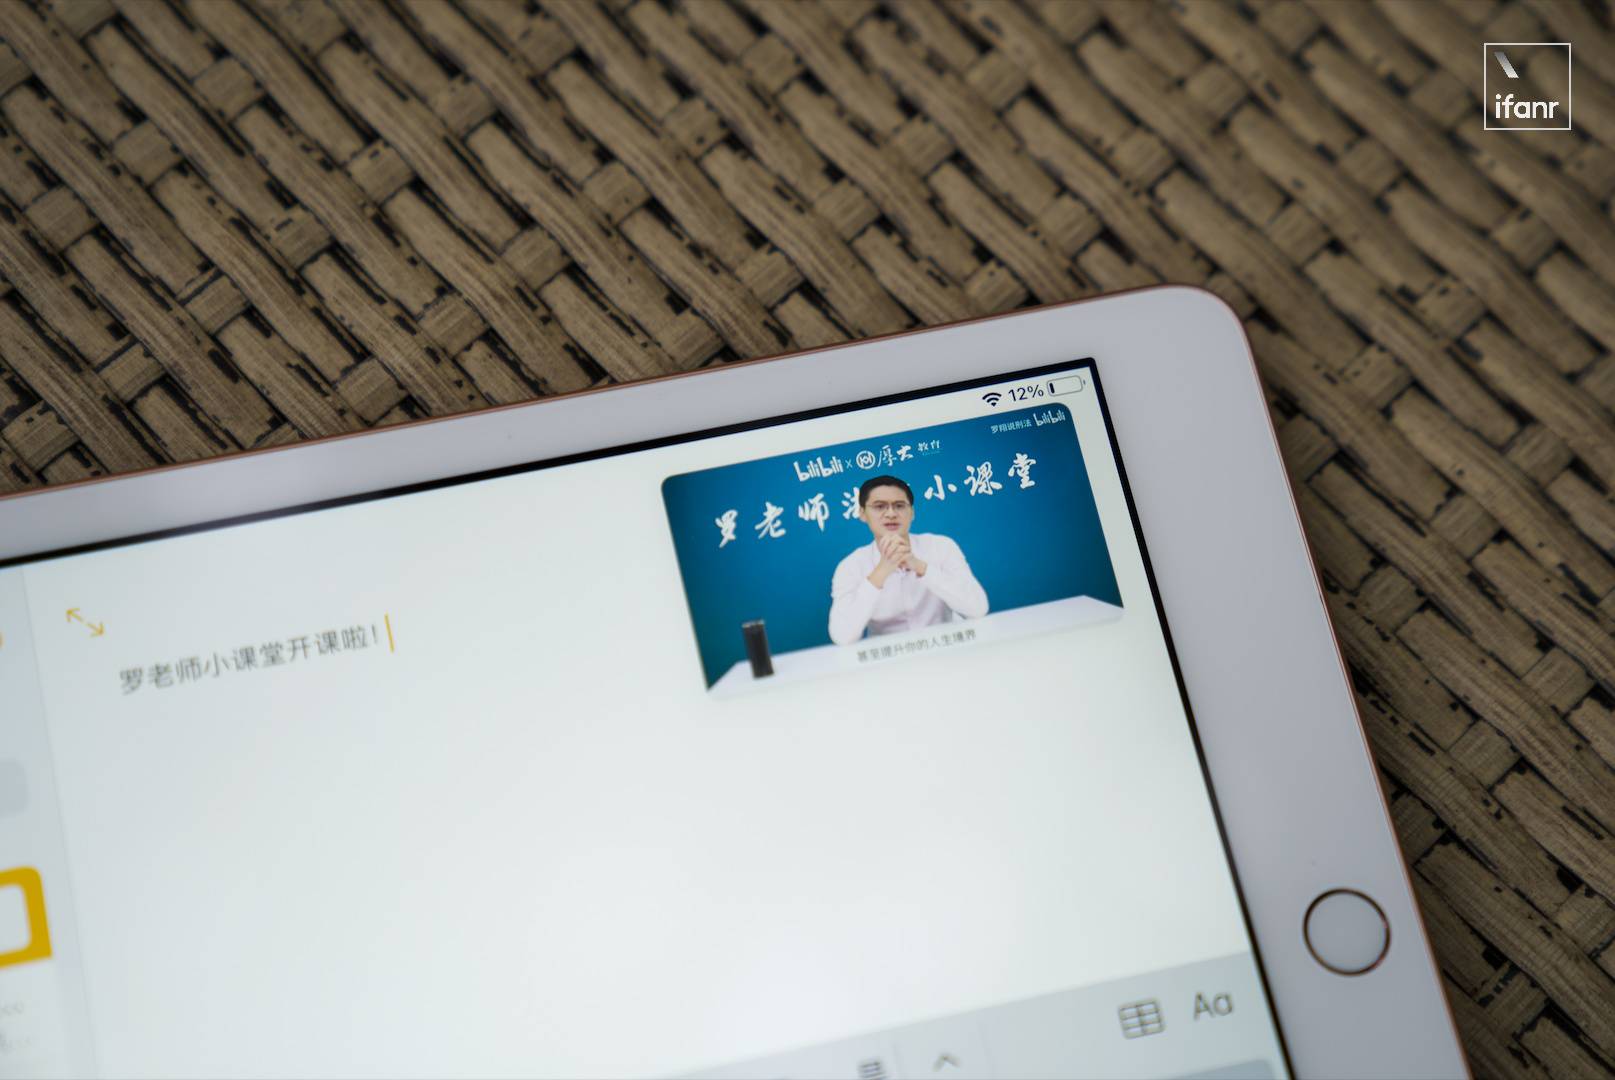 sdfesf - Recensione iPad 8: anche il valore è eccezionale, potrebbe essere la prima scelta per tablet per 3000 yuan